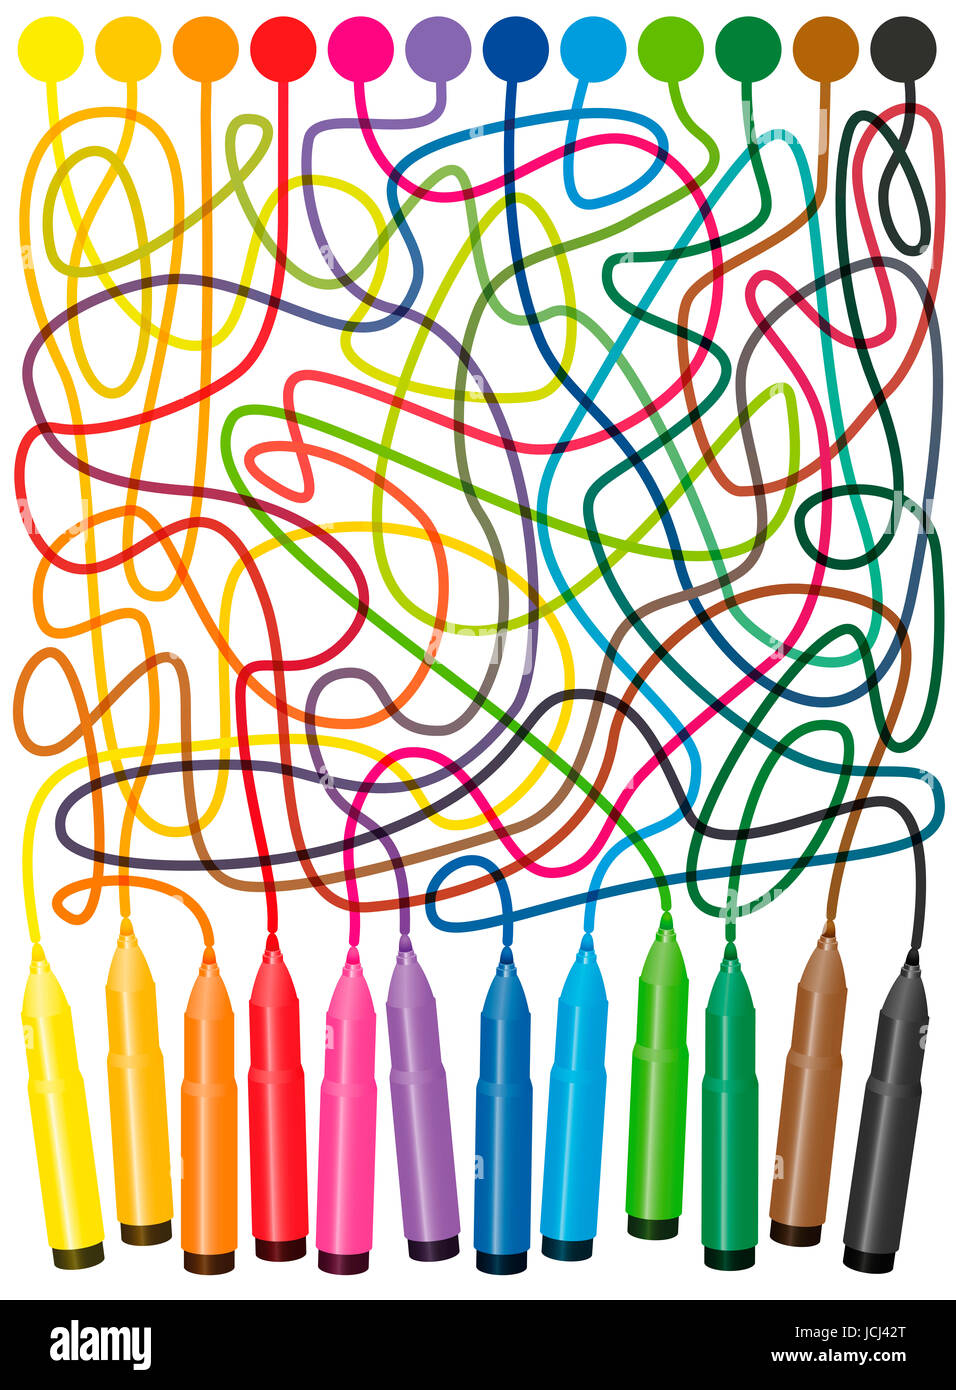 Labyrinth - die farbigen Punkte mit Filzstift-Stifte, suchen den richtigen Weg der verworrenen bunten Linien auf die Marker verbinden. Stockfoto